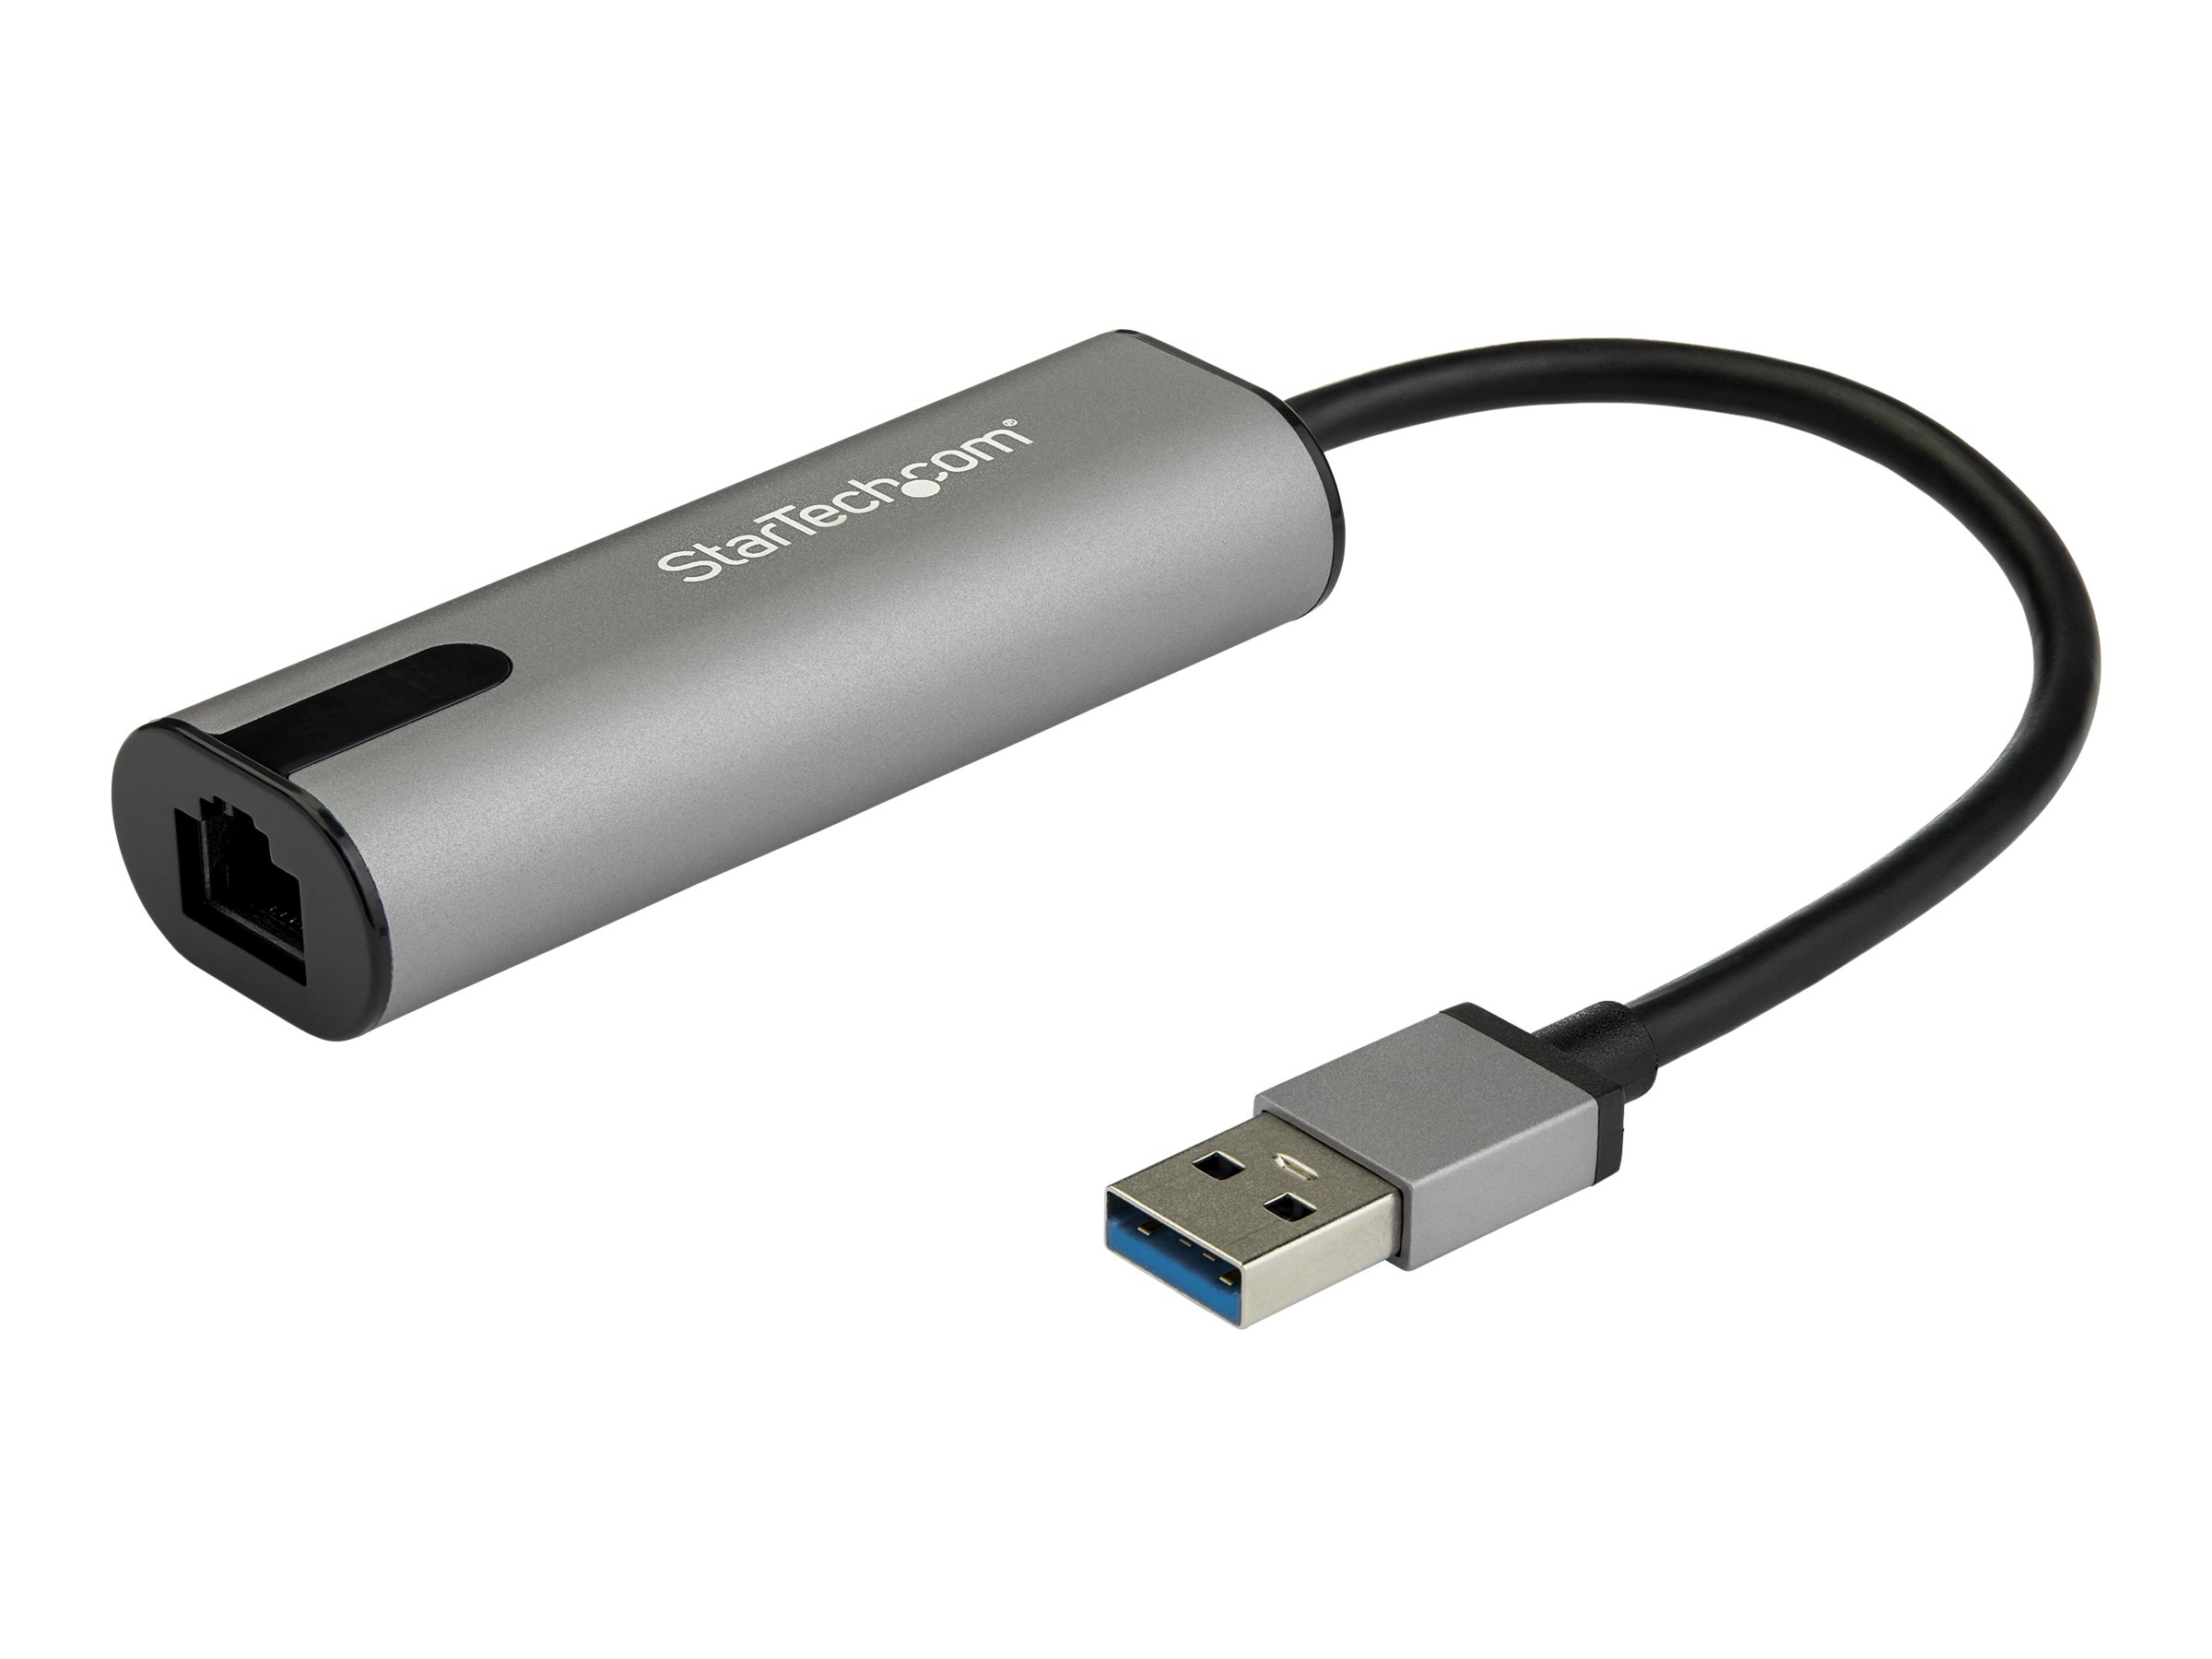 StarTech.com US2GA30 USB LAN Adapter (USB-A auf Gigabit Network / RJ45 Adapter, 2.5 GBASE-T) - Netzwerkadapter - USB 3.0 - 10M/100M/1G/2,5 Gigabit Ethernet x 1 - Schwarz, Space-grau